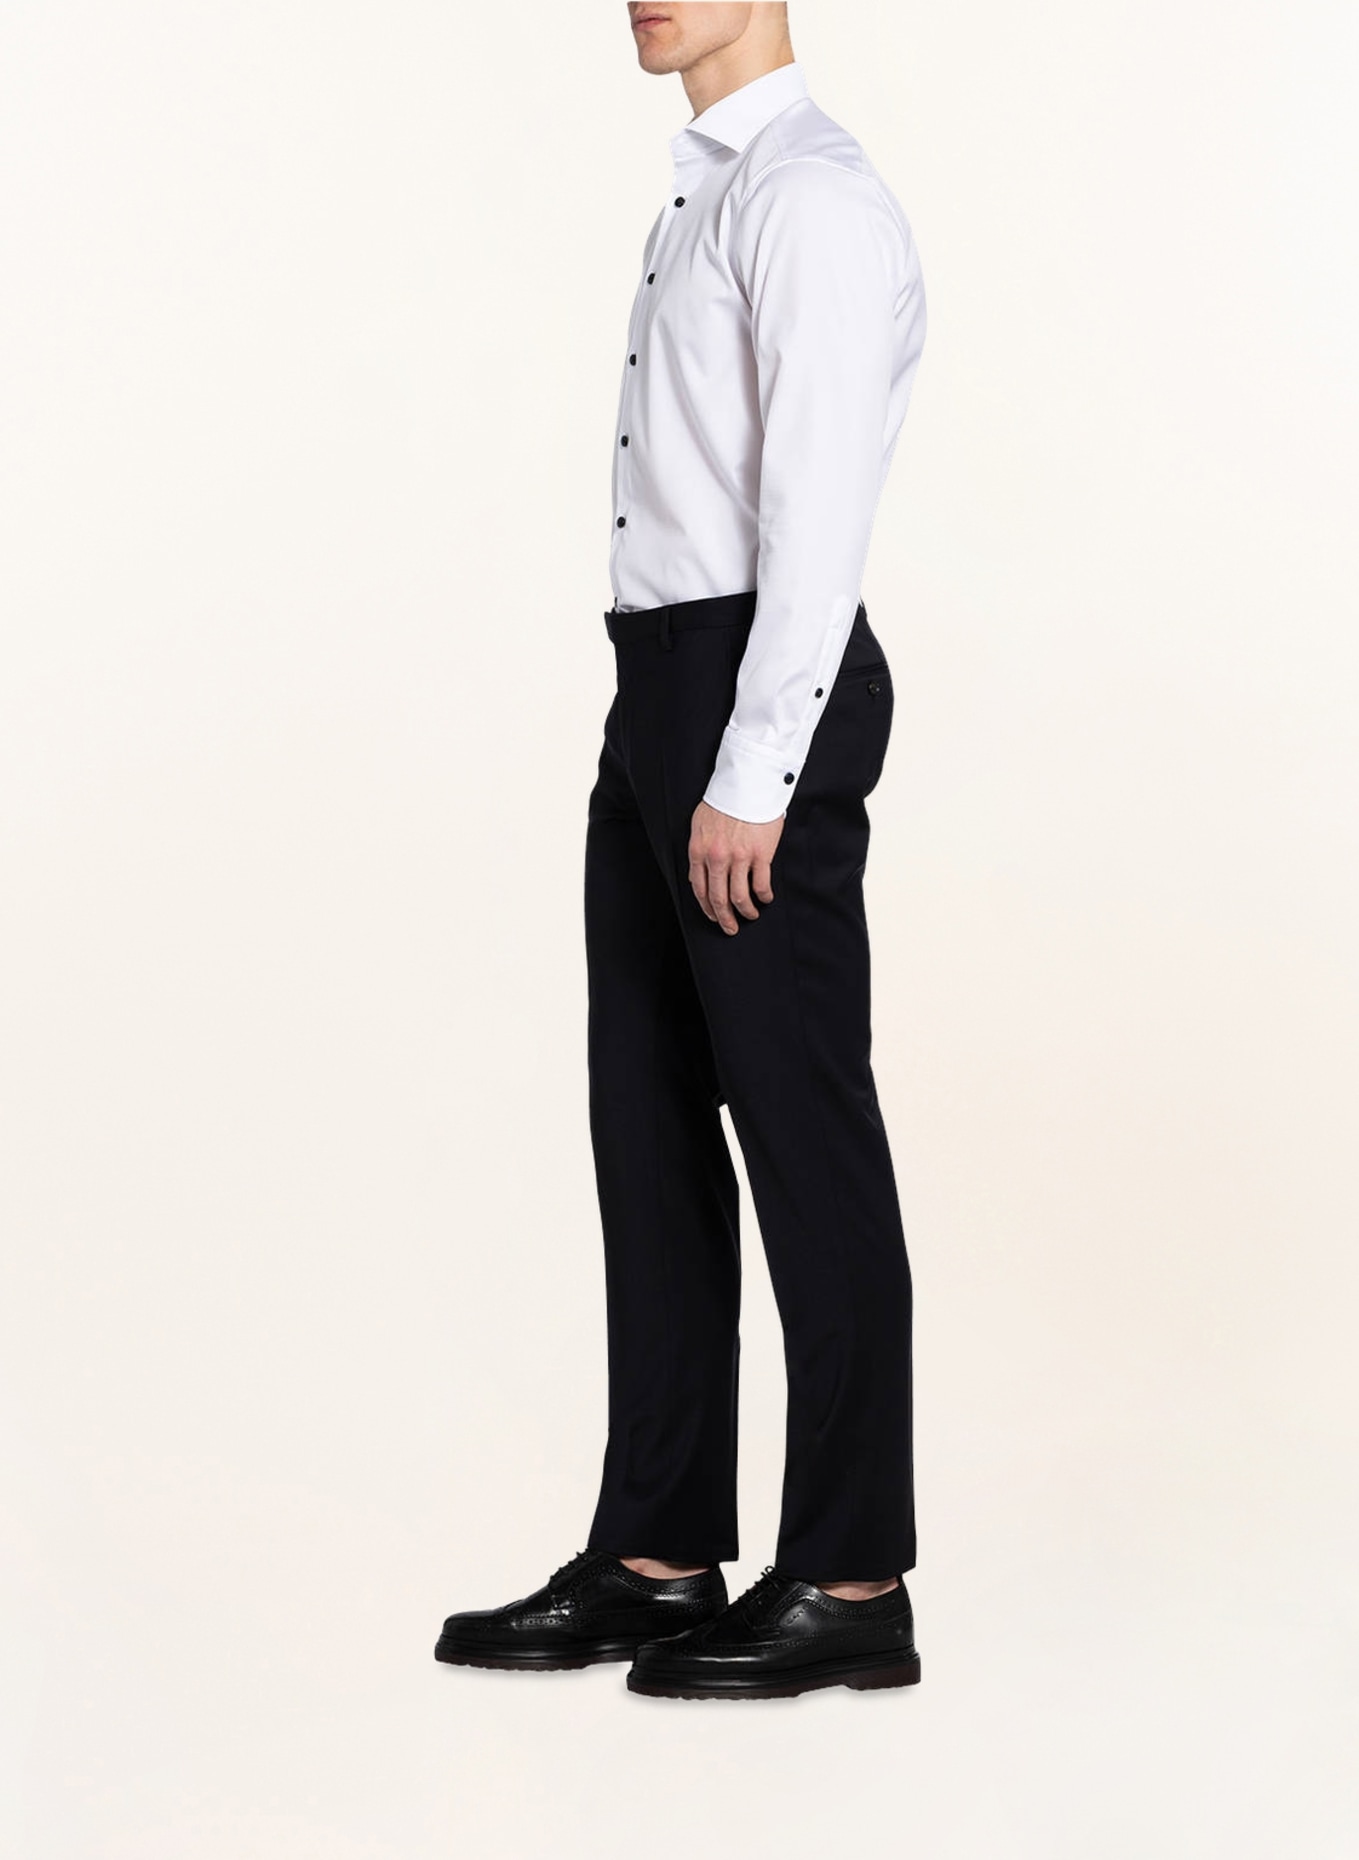 JOOP! Suit trousers BLAYR slim fit, Color: 400 DARK BLUE 400 (Image 5)